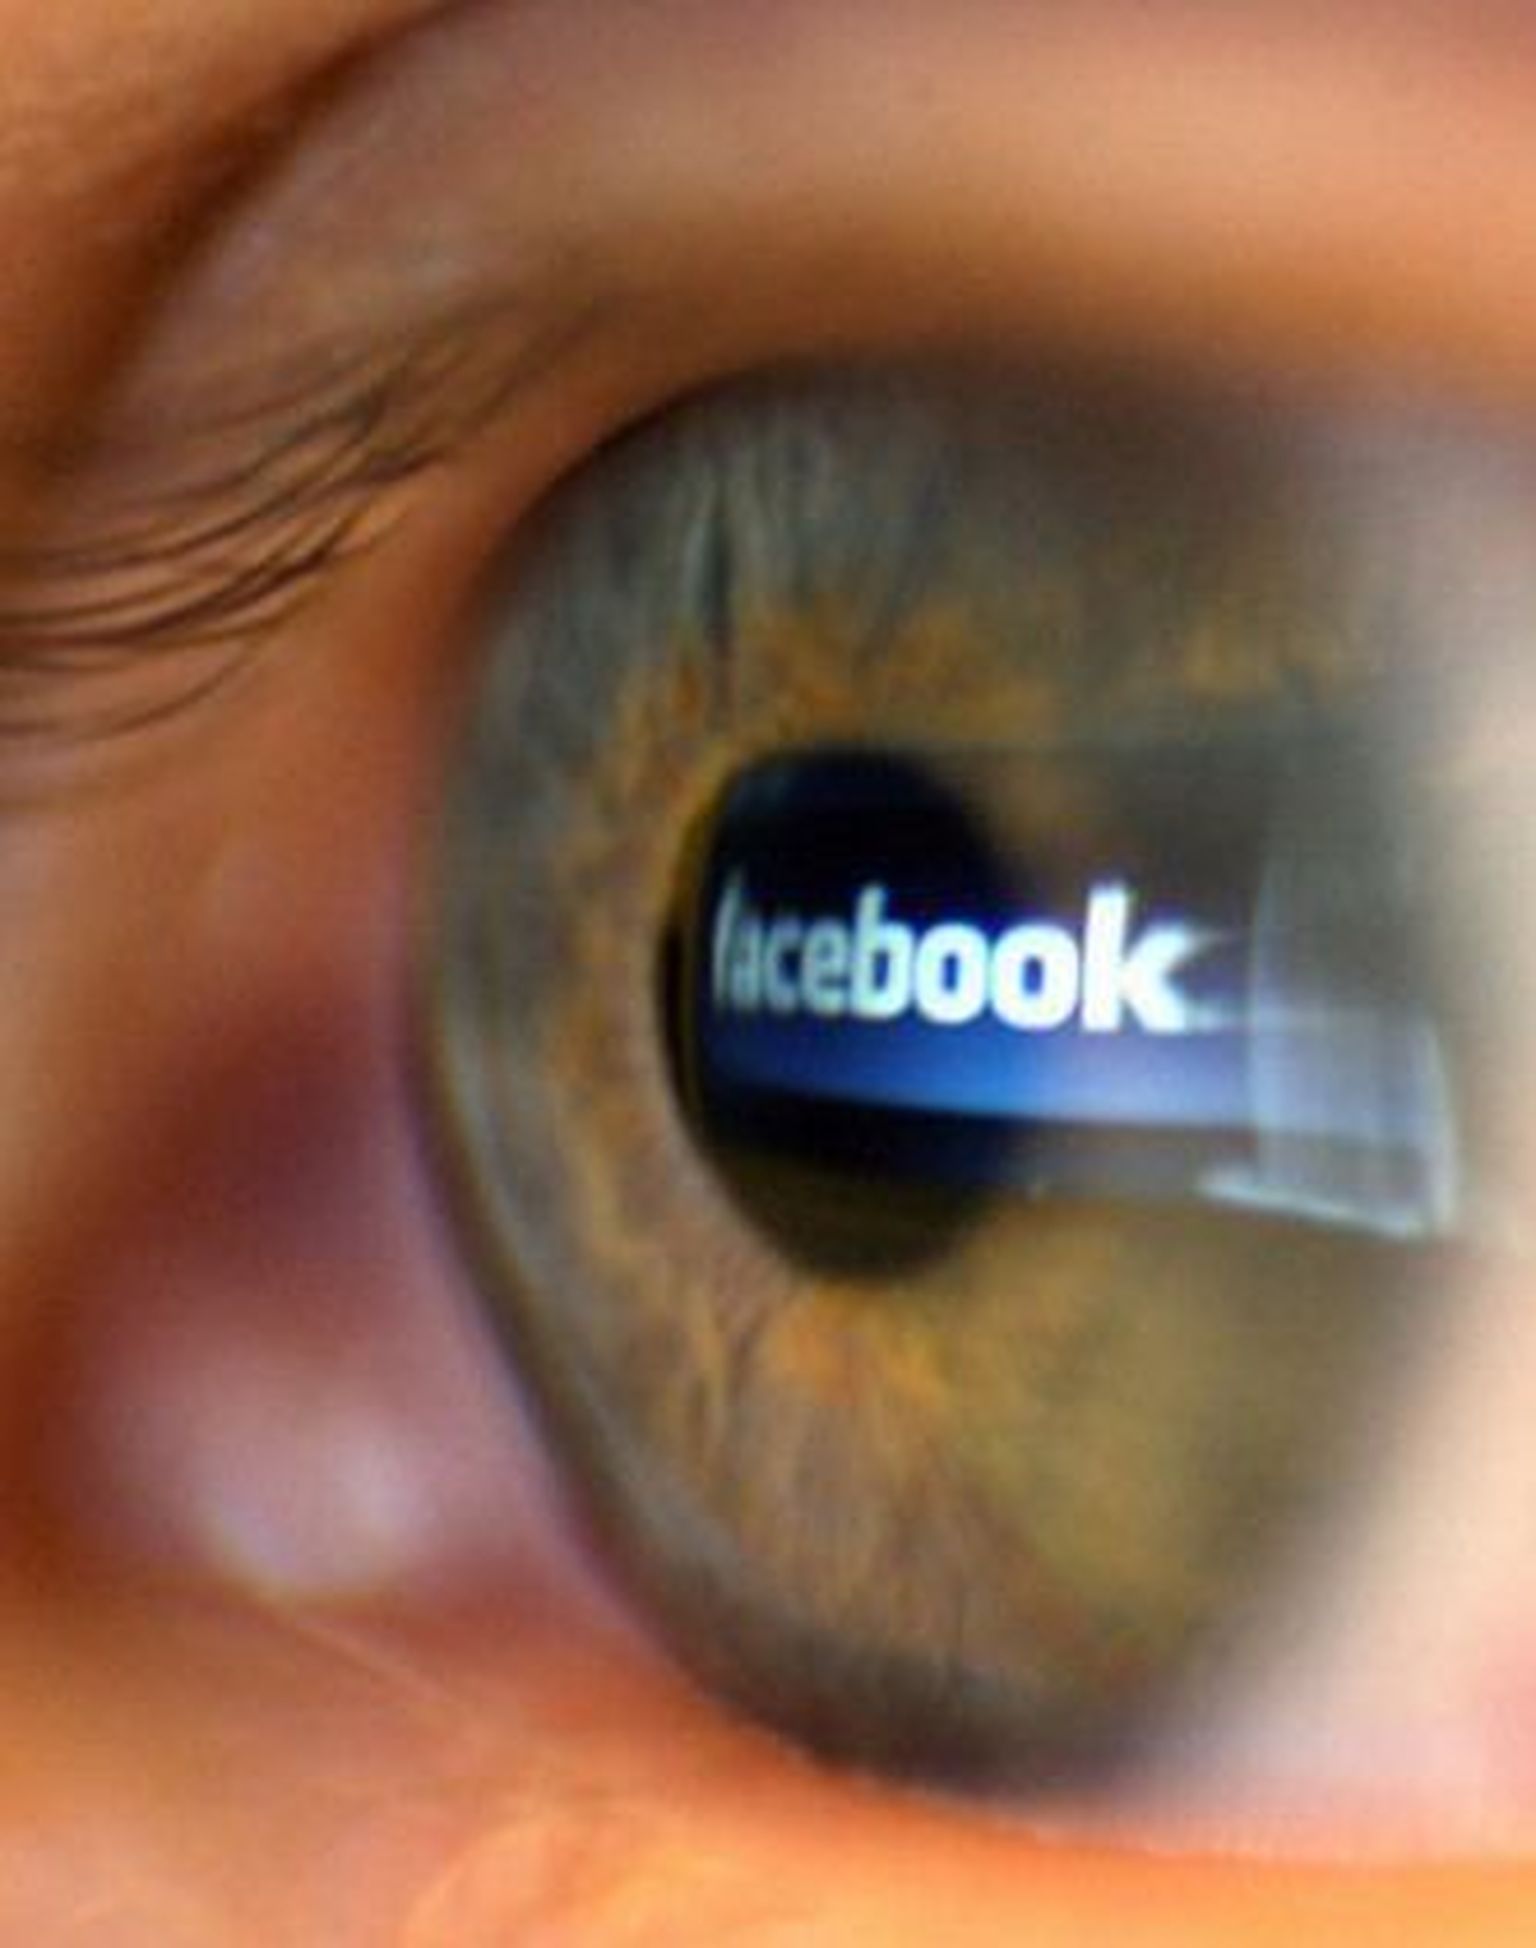 Facebooki põlvkonda on tabanud sõltlaste sündroom?